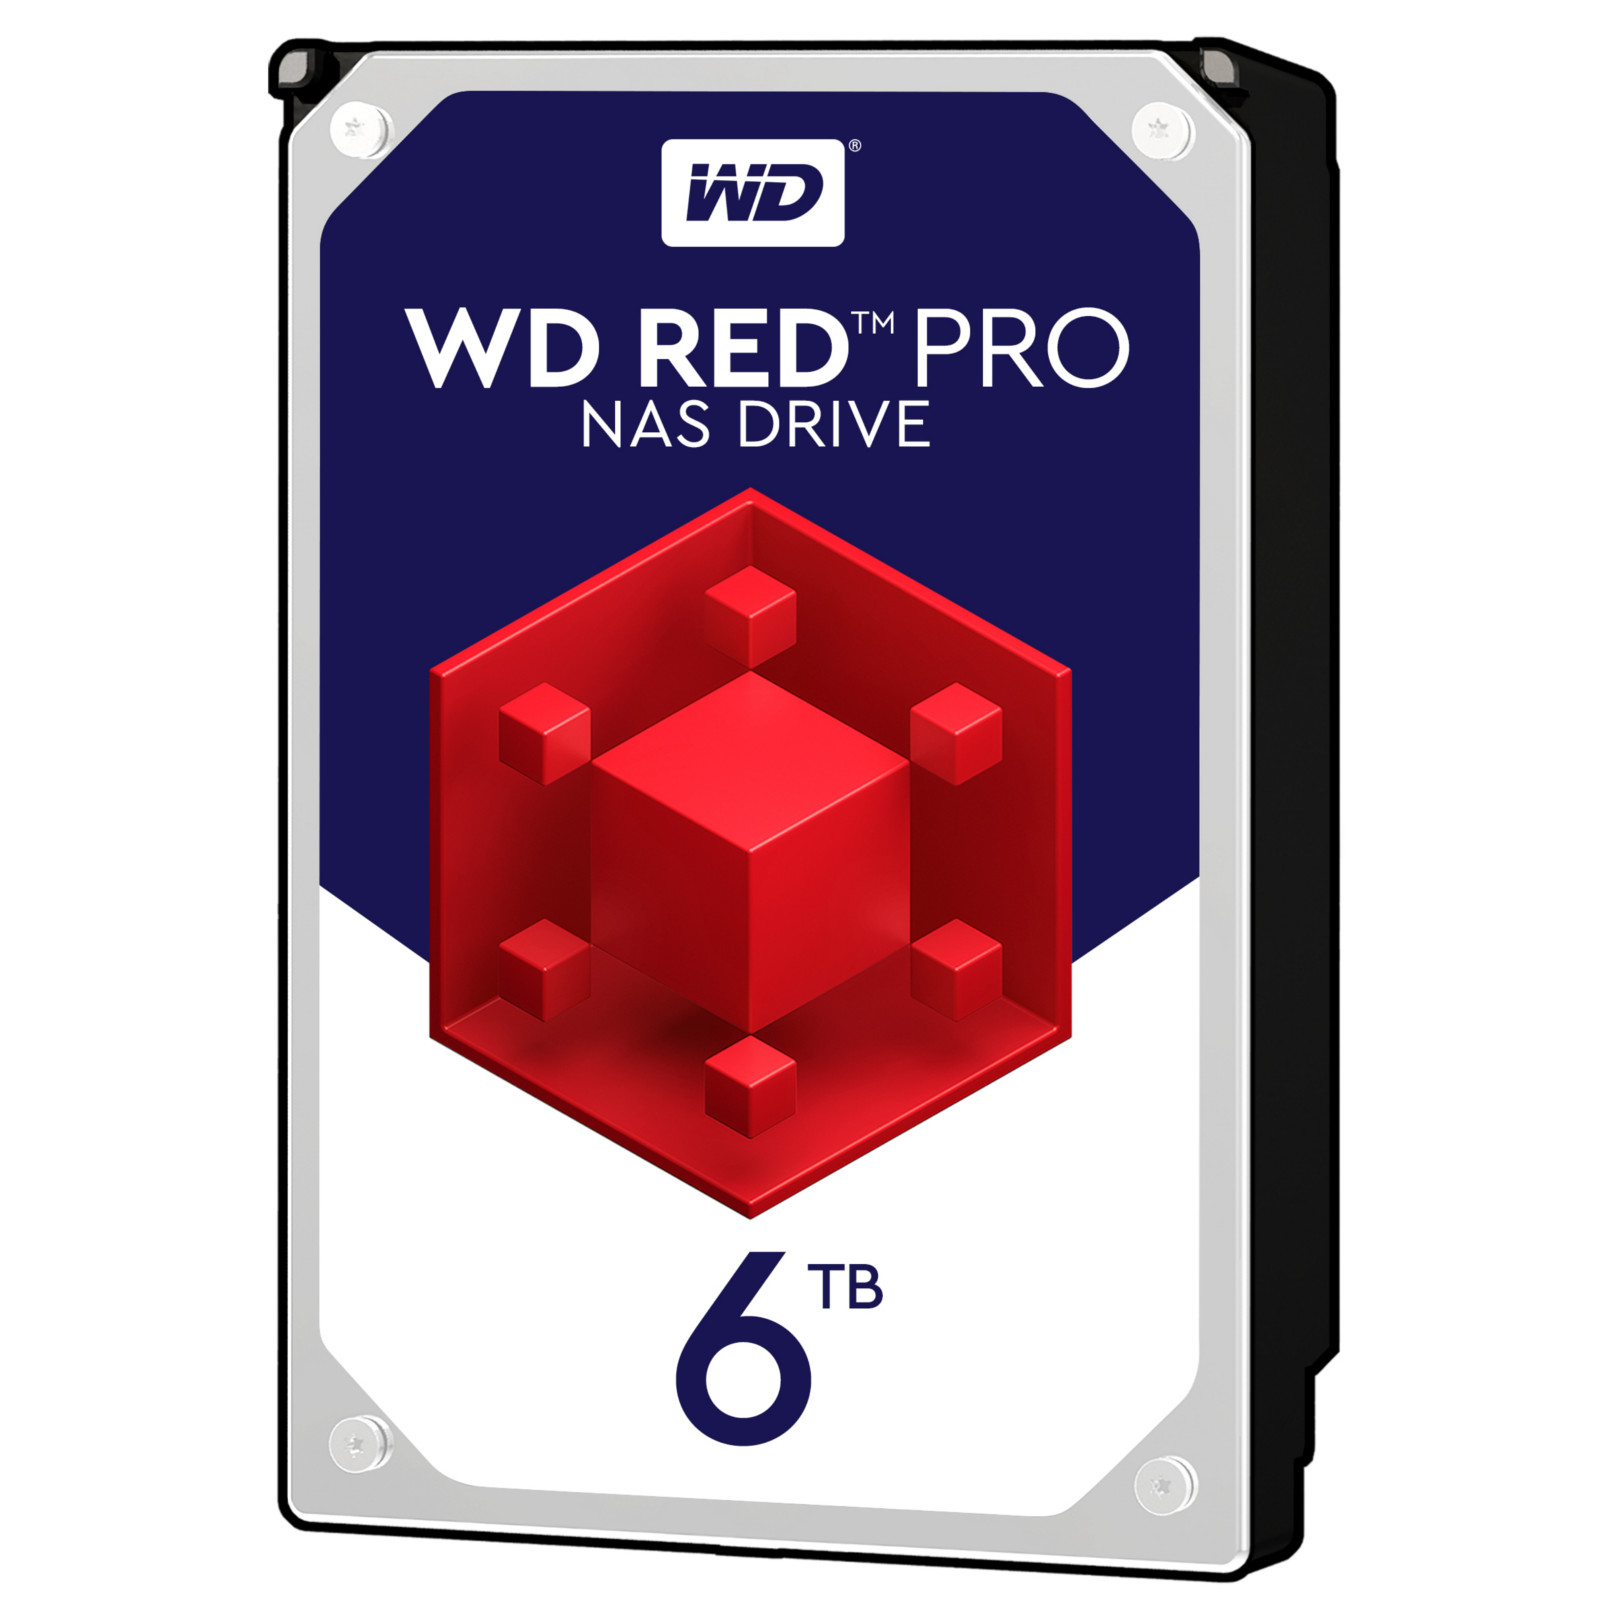 WD - WD 6TB Red Pro 7200rpm HDD 256MB Cache Internal NAS Hard Drive (WD6003FFBX)